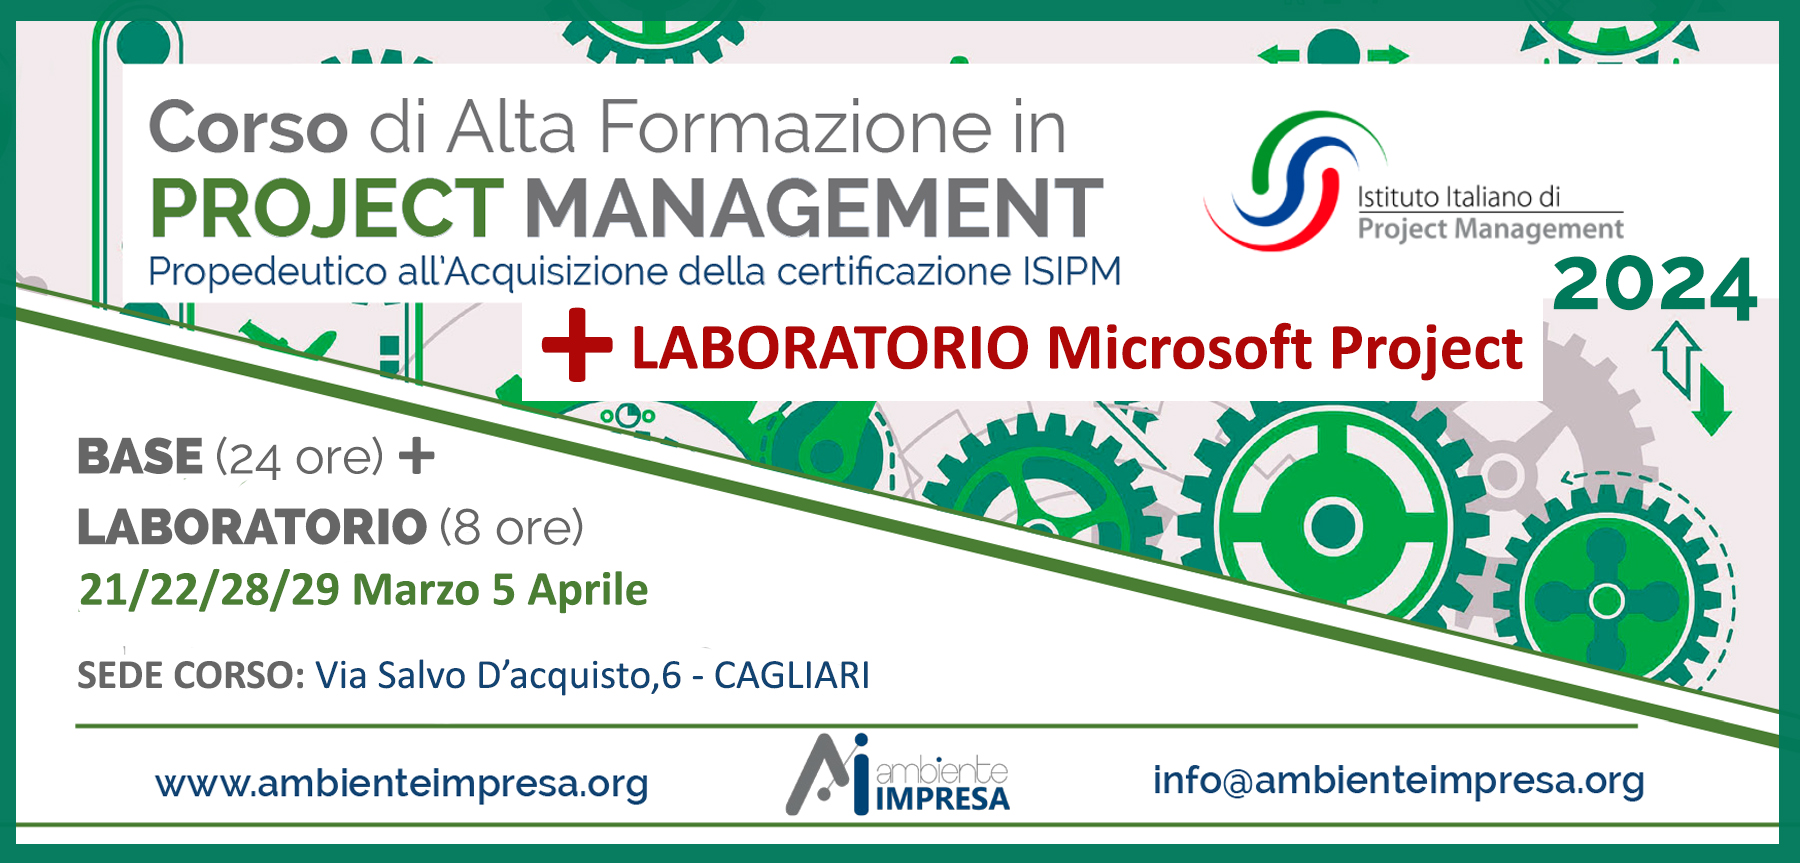 Corso Base Project Management + Laboratoro Pratico - Marzo 2024 - Ambiente Impresa srl - Cagliari